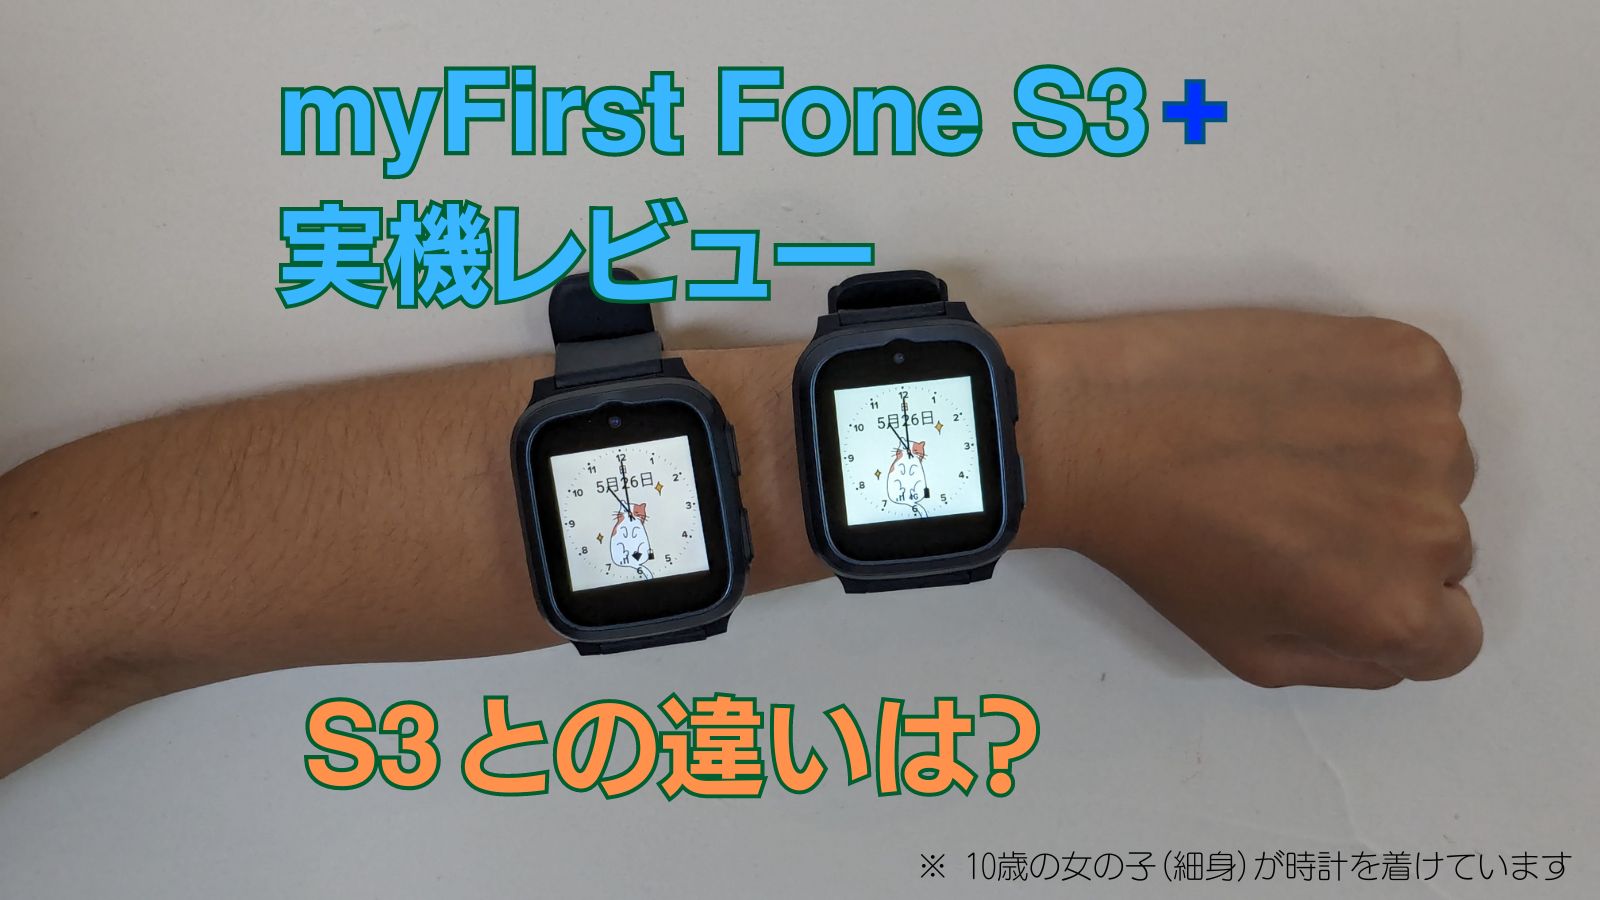 「myFirst Fone S3+ の実機レビュー | S3 との違いは？」のアイキャッチ画像。